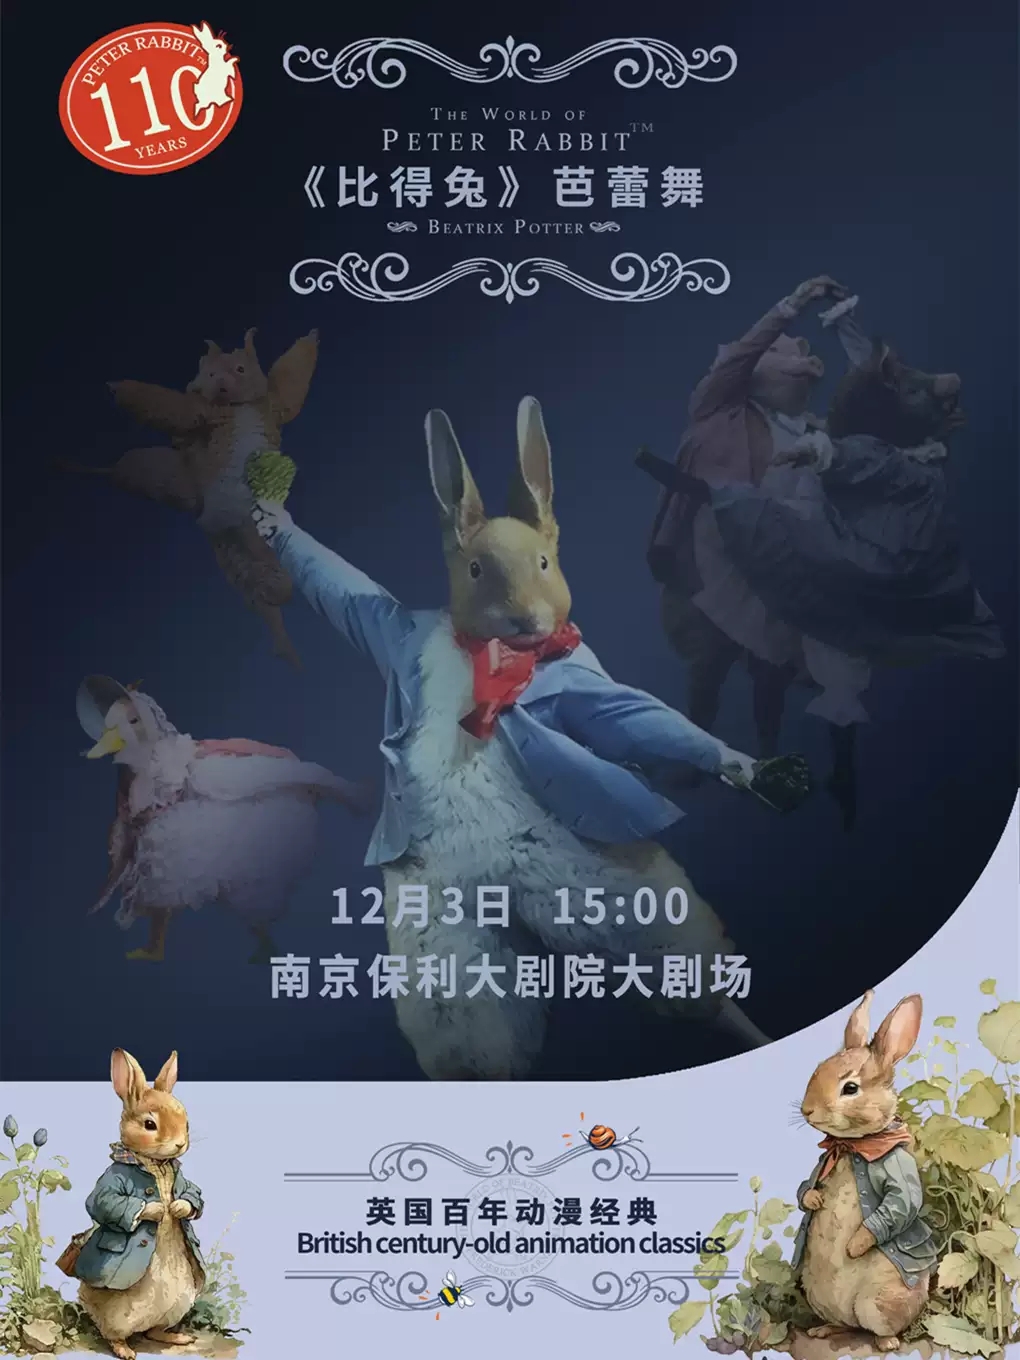 【南京】英國百年動漫經典芭蕾舞劇《比得兔狂歡夜》